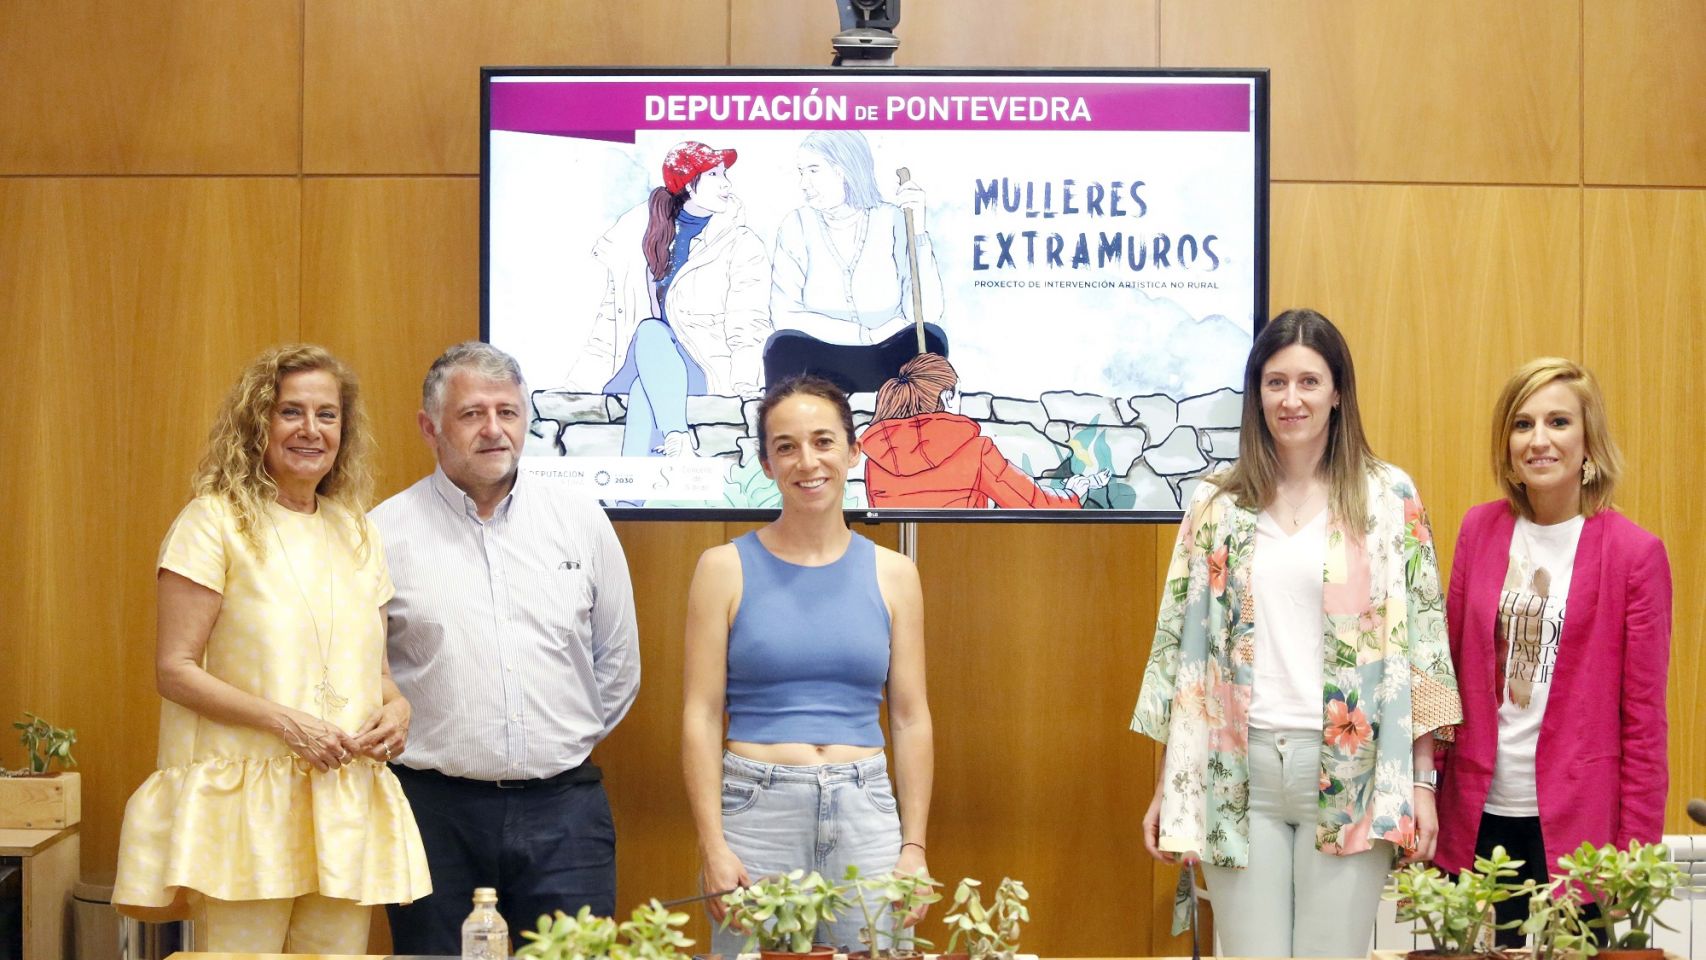 Mulleres Extramuros, iniciativa impulsada por la Diputación de Pointevedra.